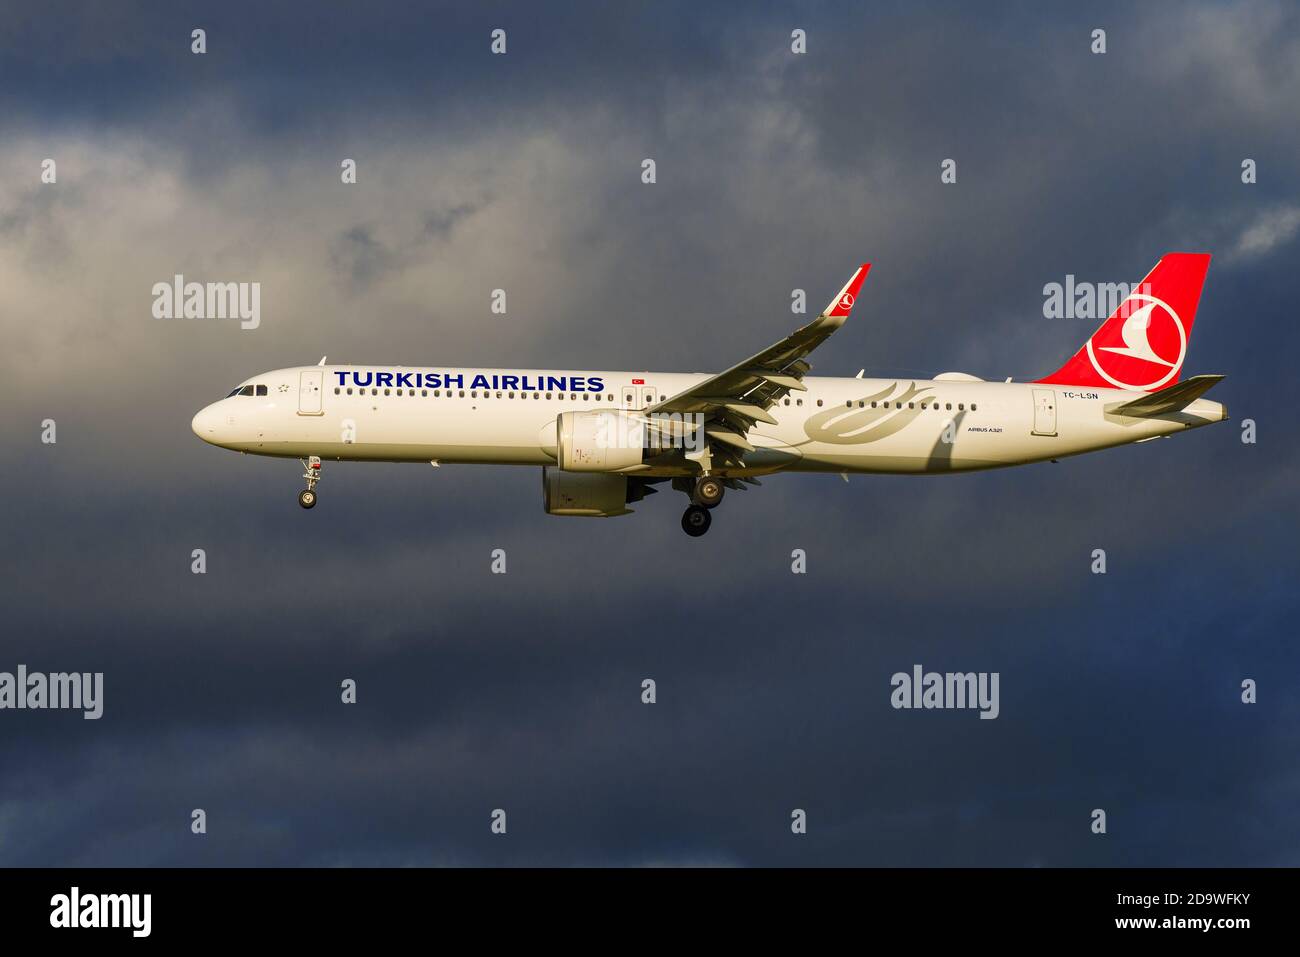 SANKT PETERSBURG, RUSSLAND - 28. OKTOBER 2020: Airbus A321neo (TC-LSN) von Turkish Airlines auf dem Gleitschirmweg vor dem Hintergrund eines düsteren Himmels Stockfoto